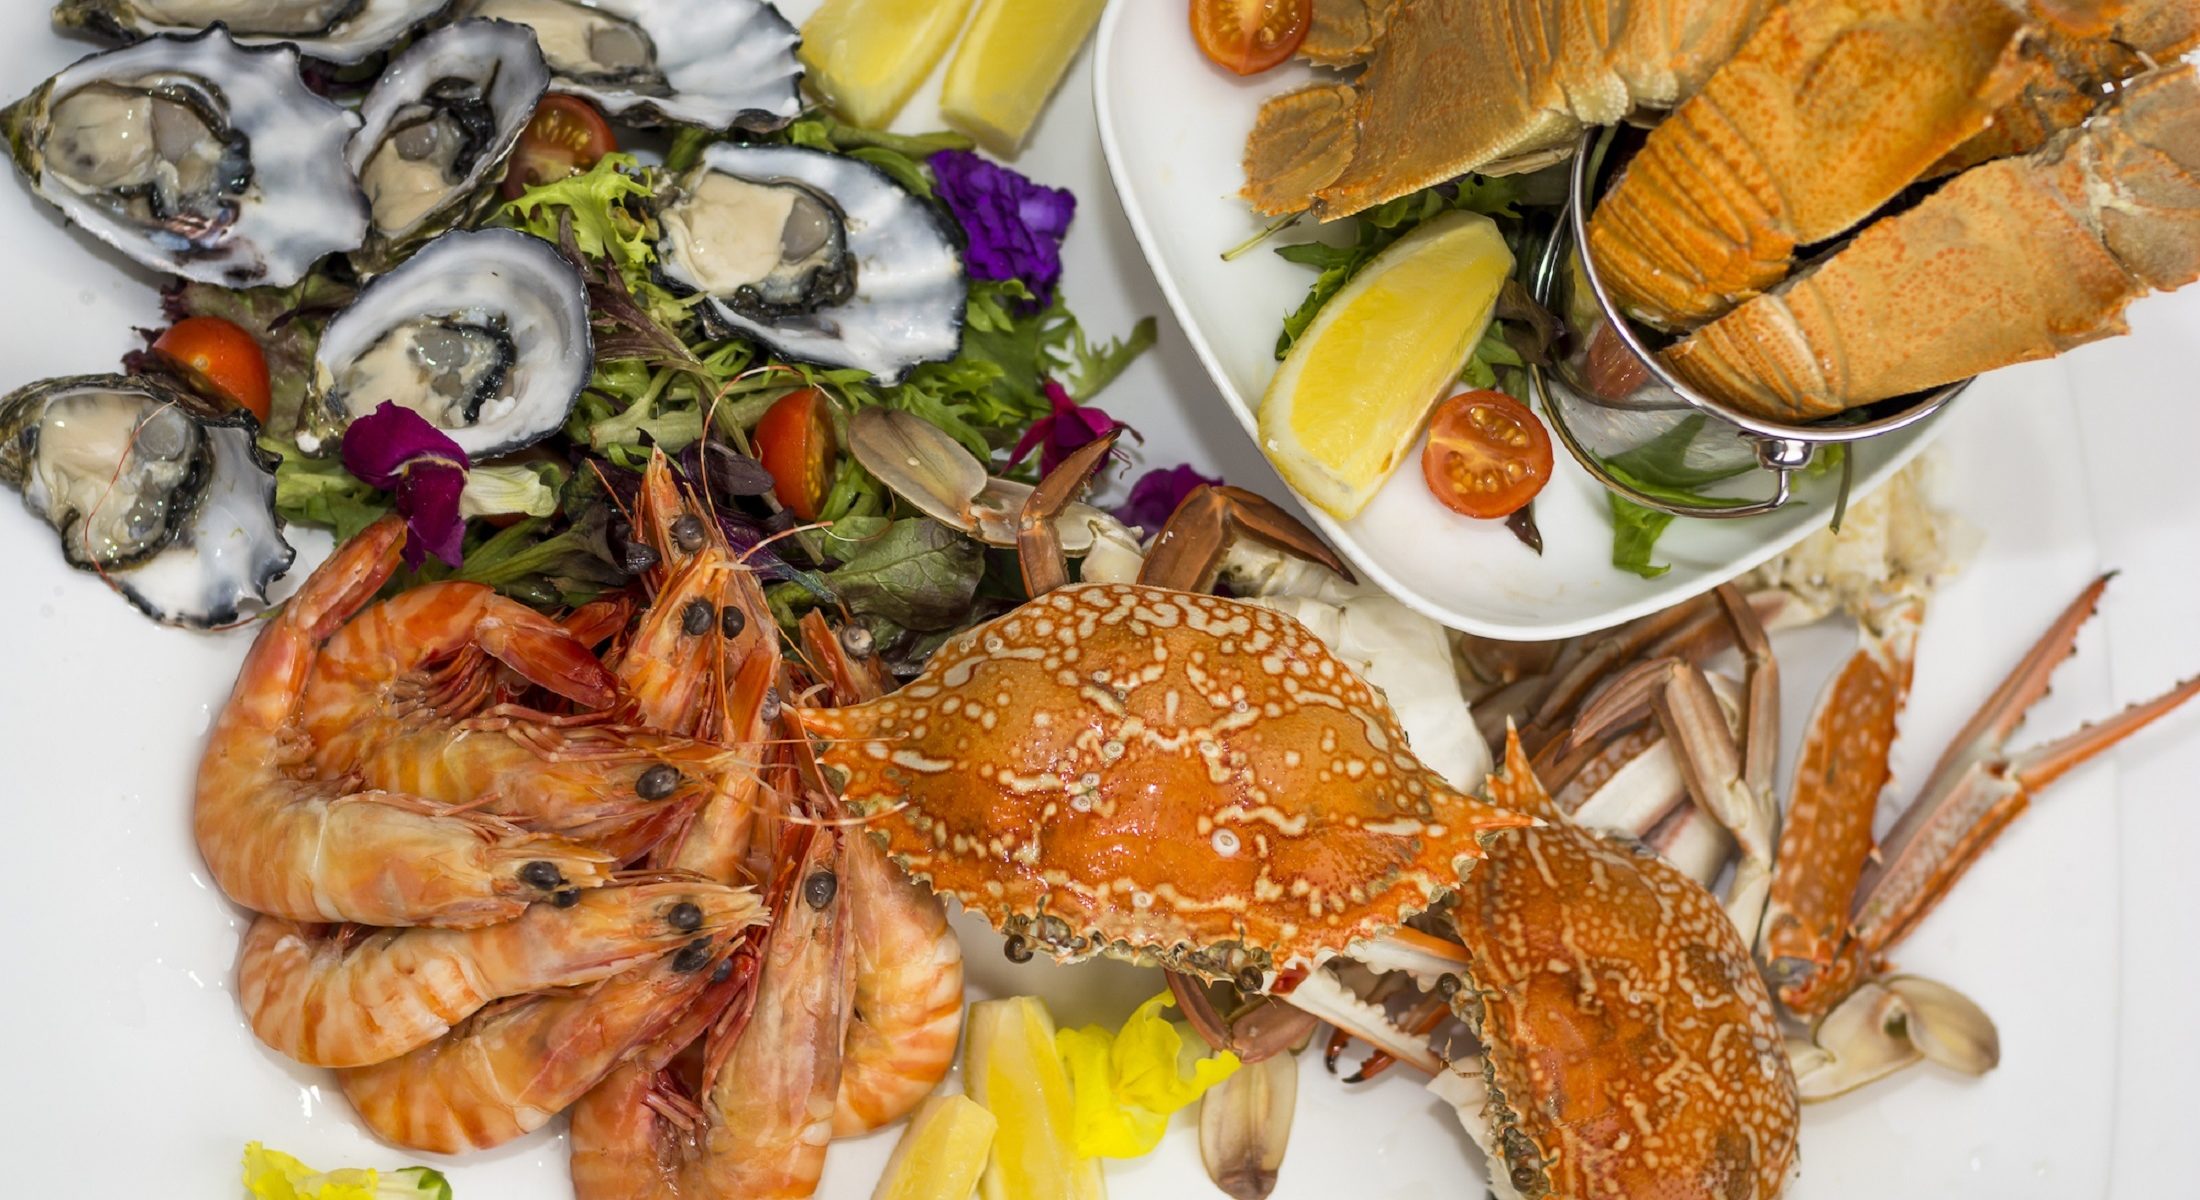 The Golden Ox Restaurant Margate Seafood Platter Moreton Bay Region